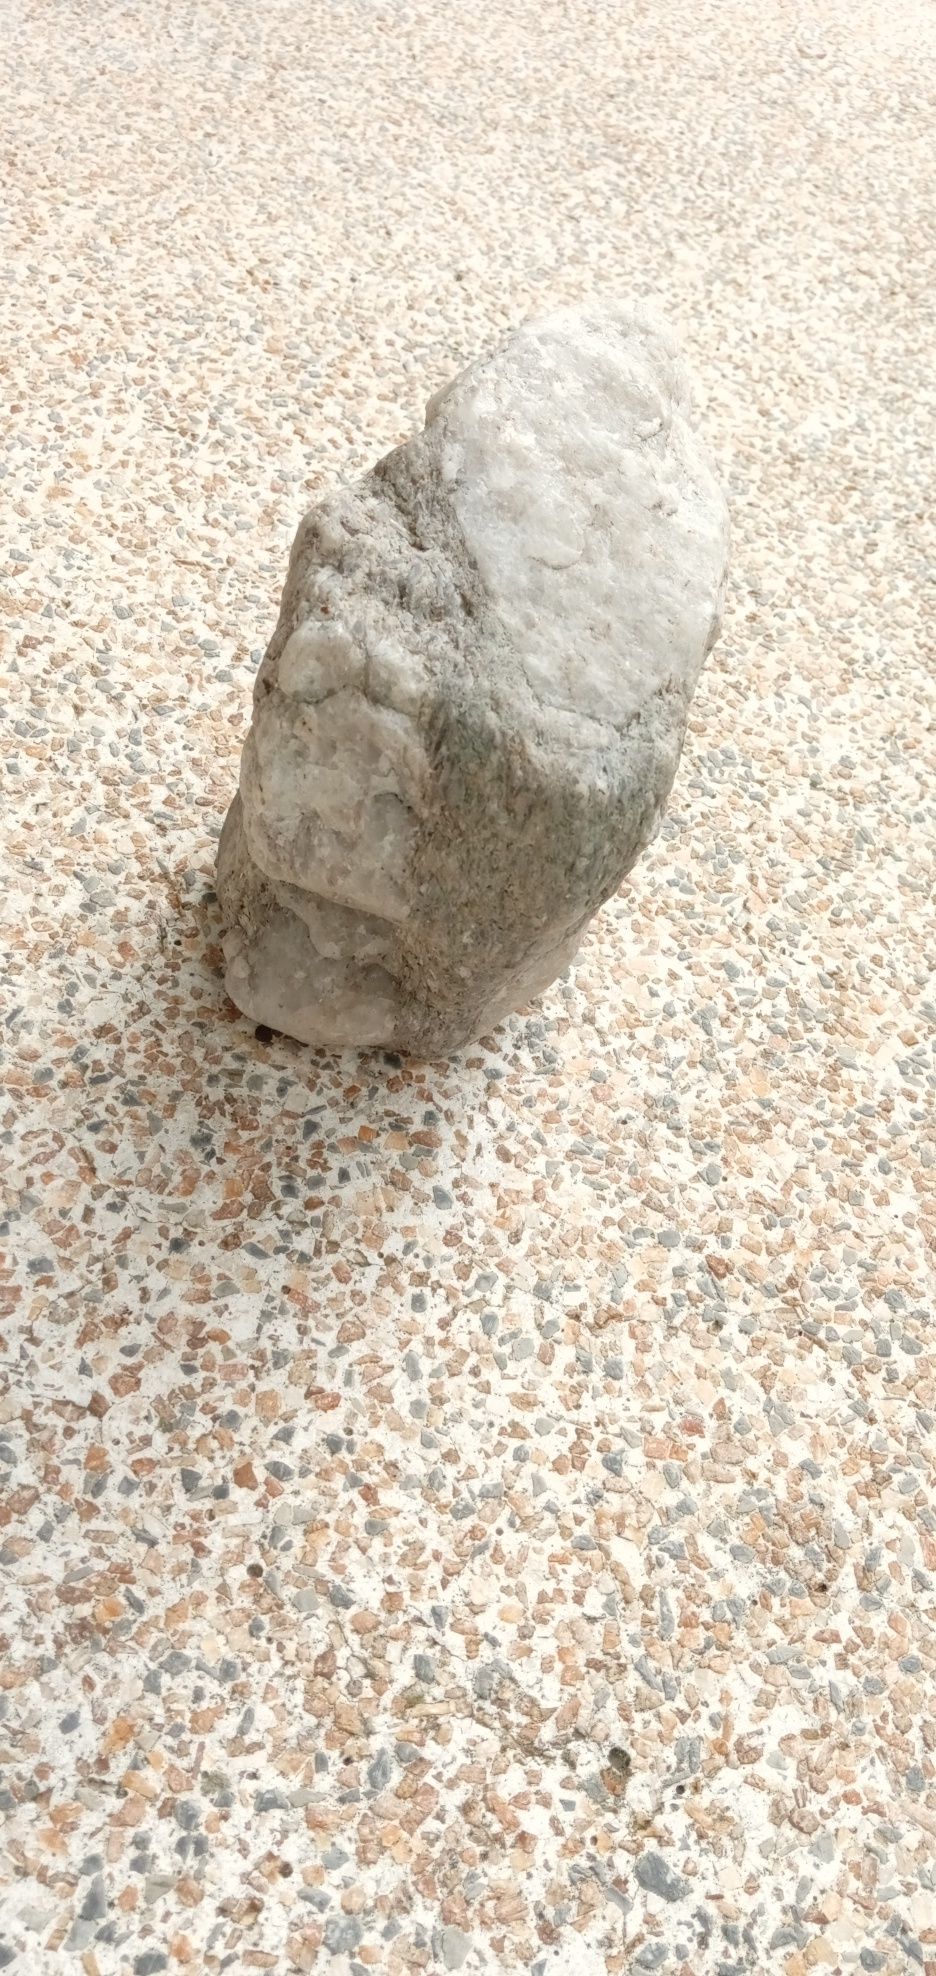 Jarro LINDO encontrado no Douro a fazer a sesta7E-Pedra antig2EDesde2E